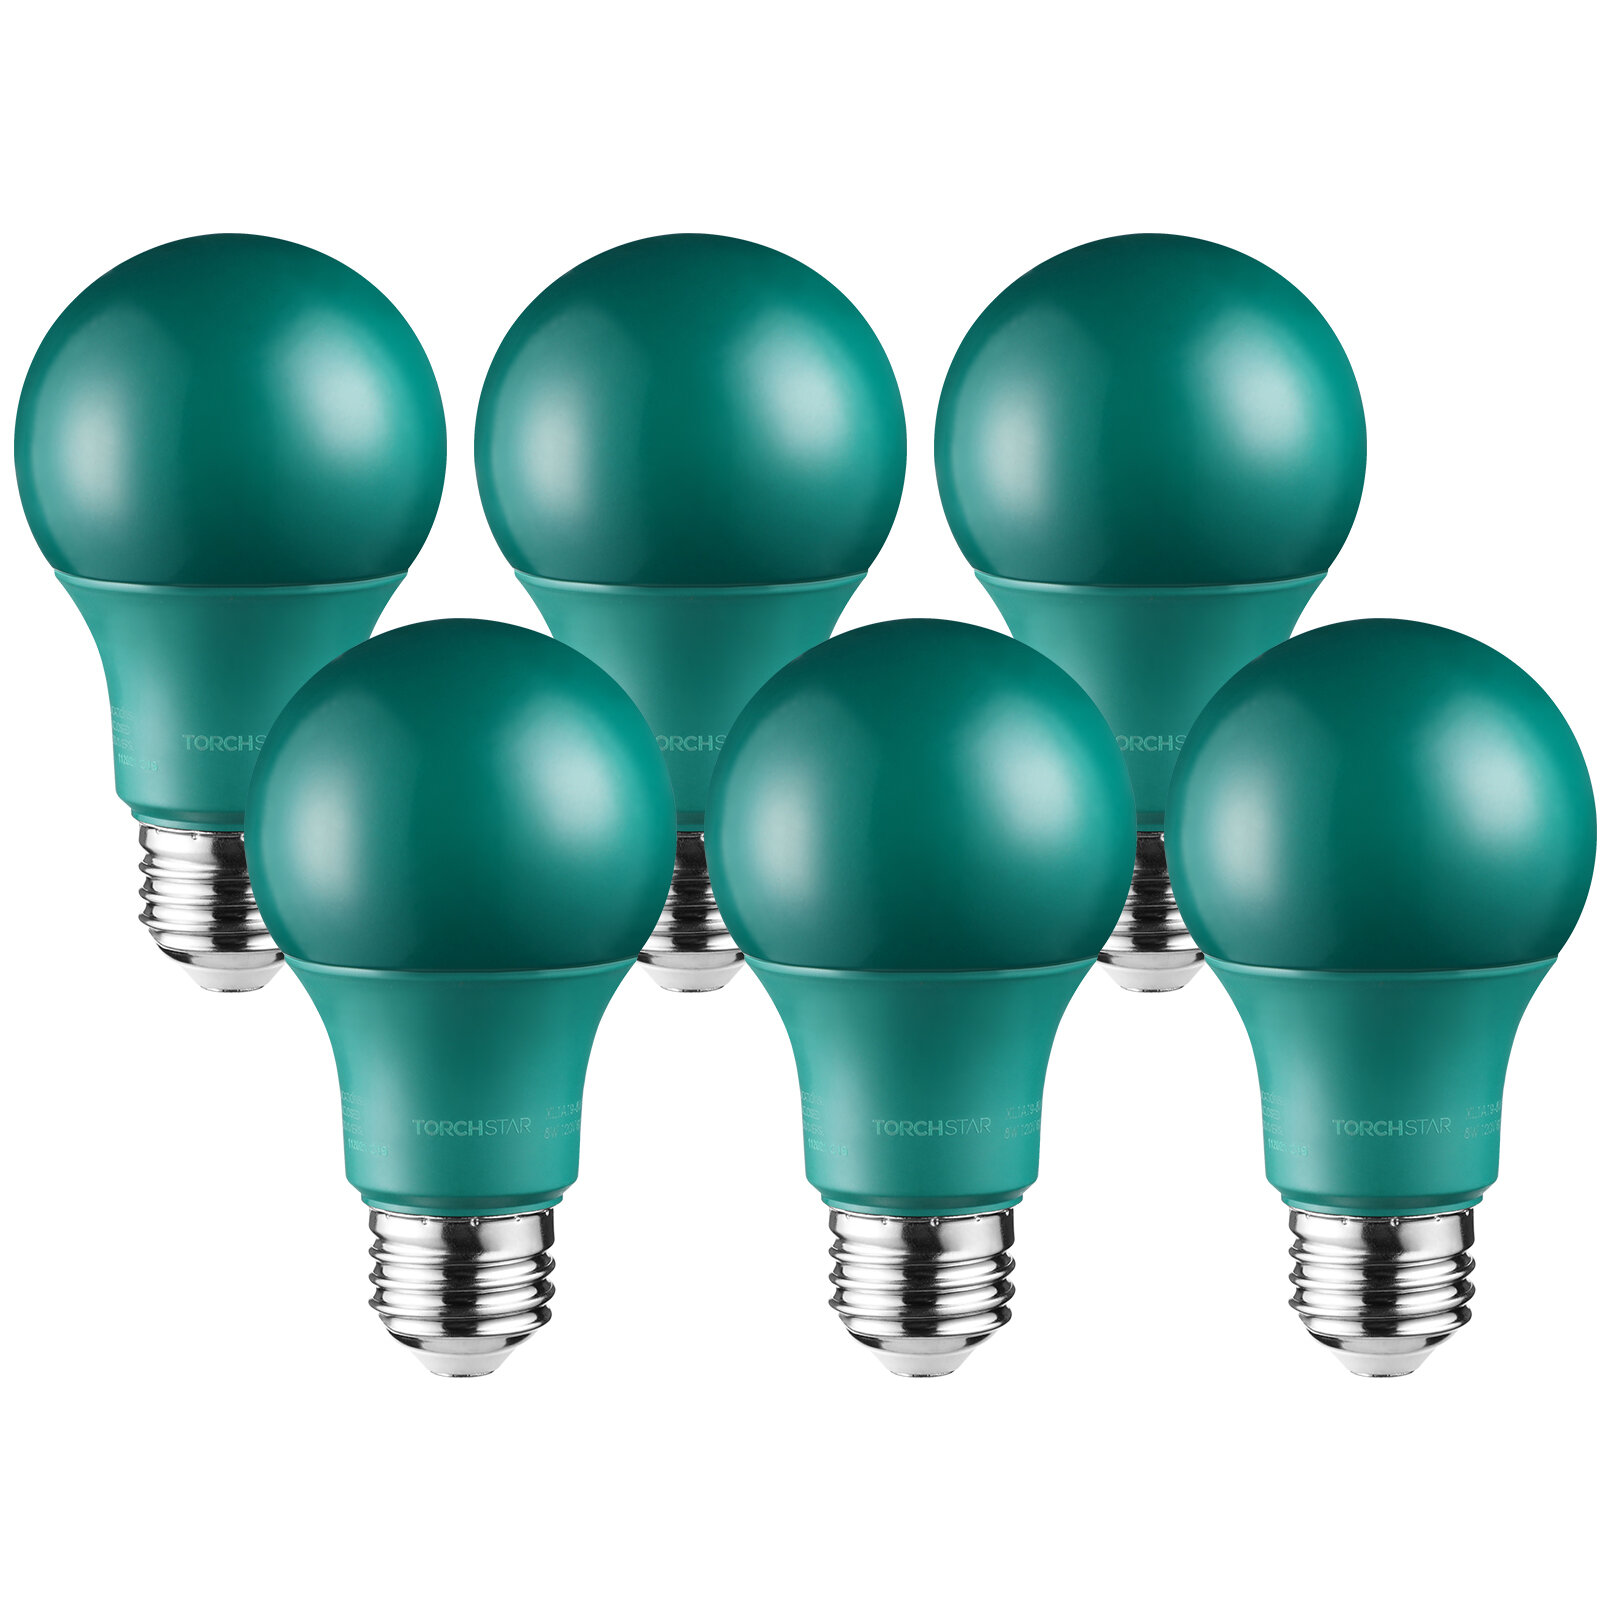 TORCHSTAR LED A19 Blue Light Bulbs, E26 Base Light Bulb, 8W 120V